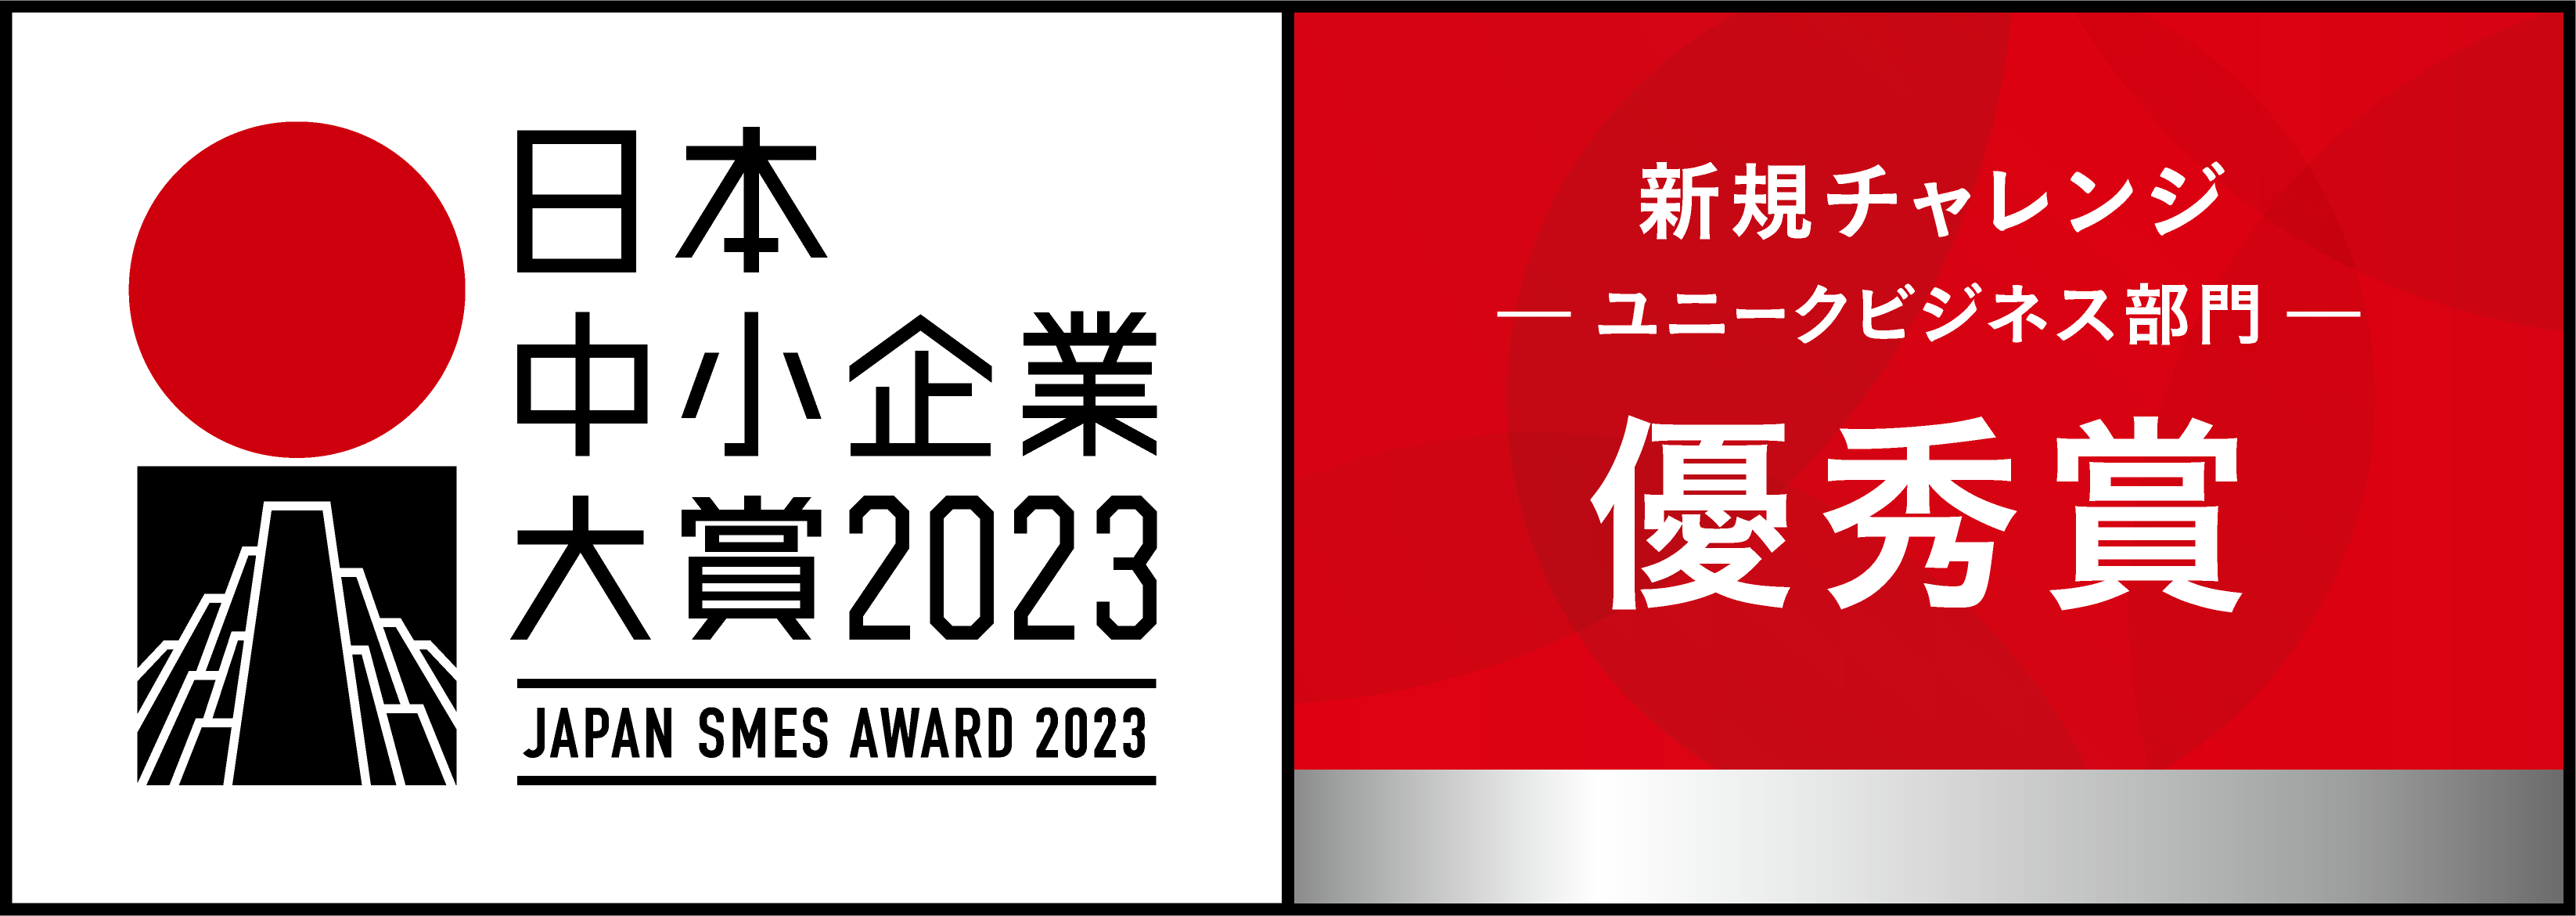 日本中小企業大賞2023